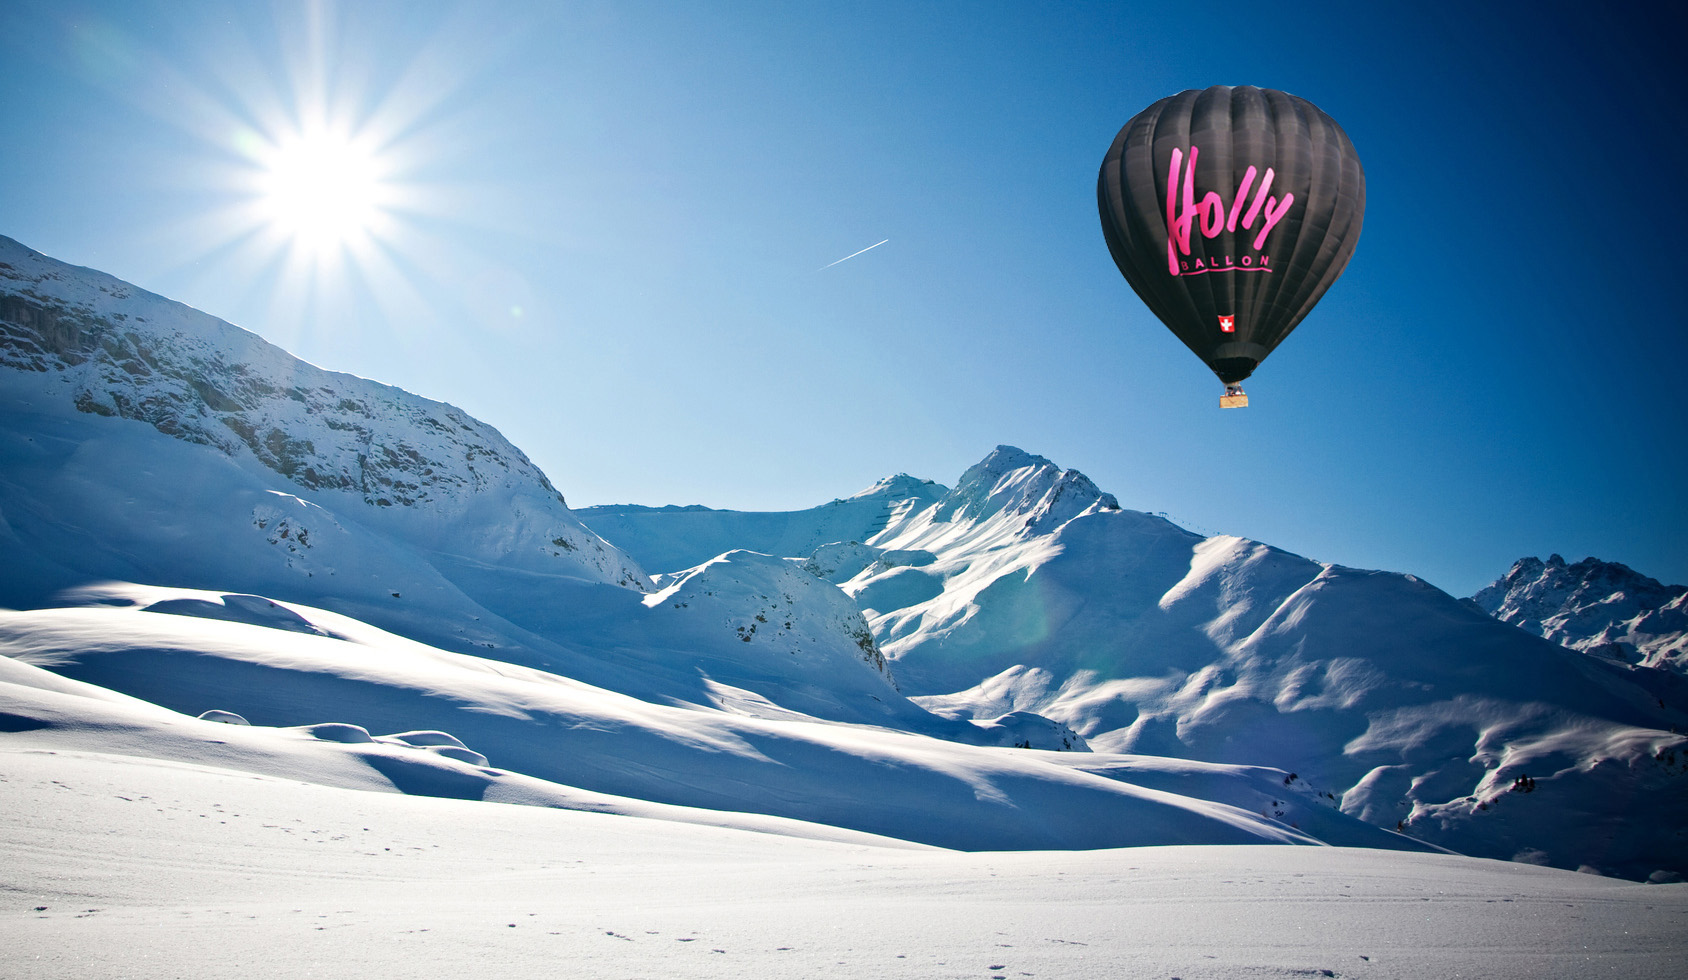 Foto vom Holly-Ballon über den Alpen. Klick darauf führt zur Webseite www.holly.ch in neuem Tab.